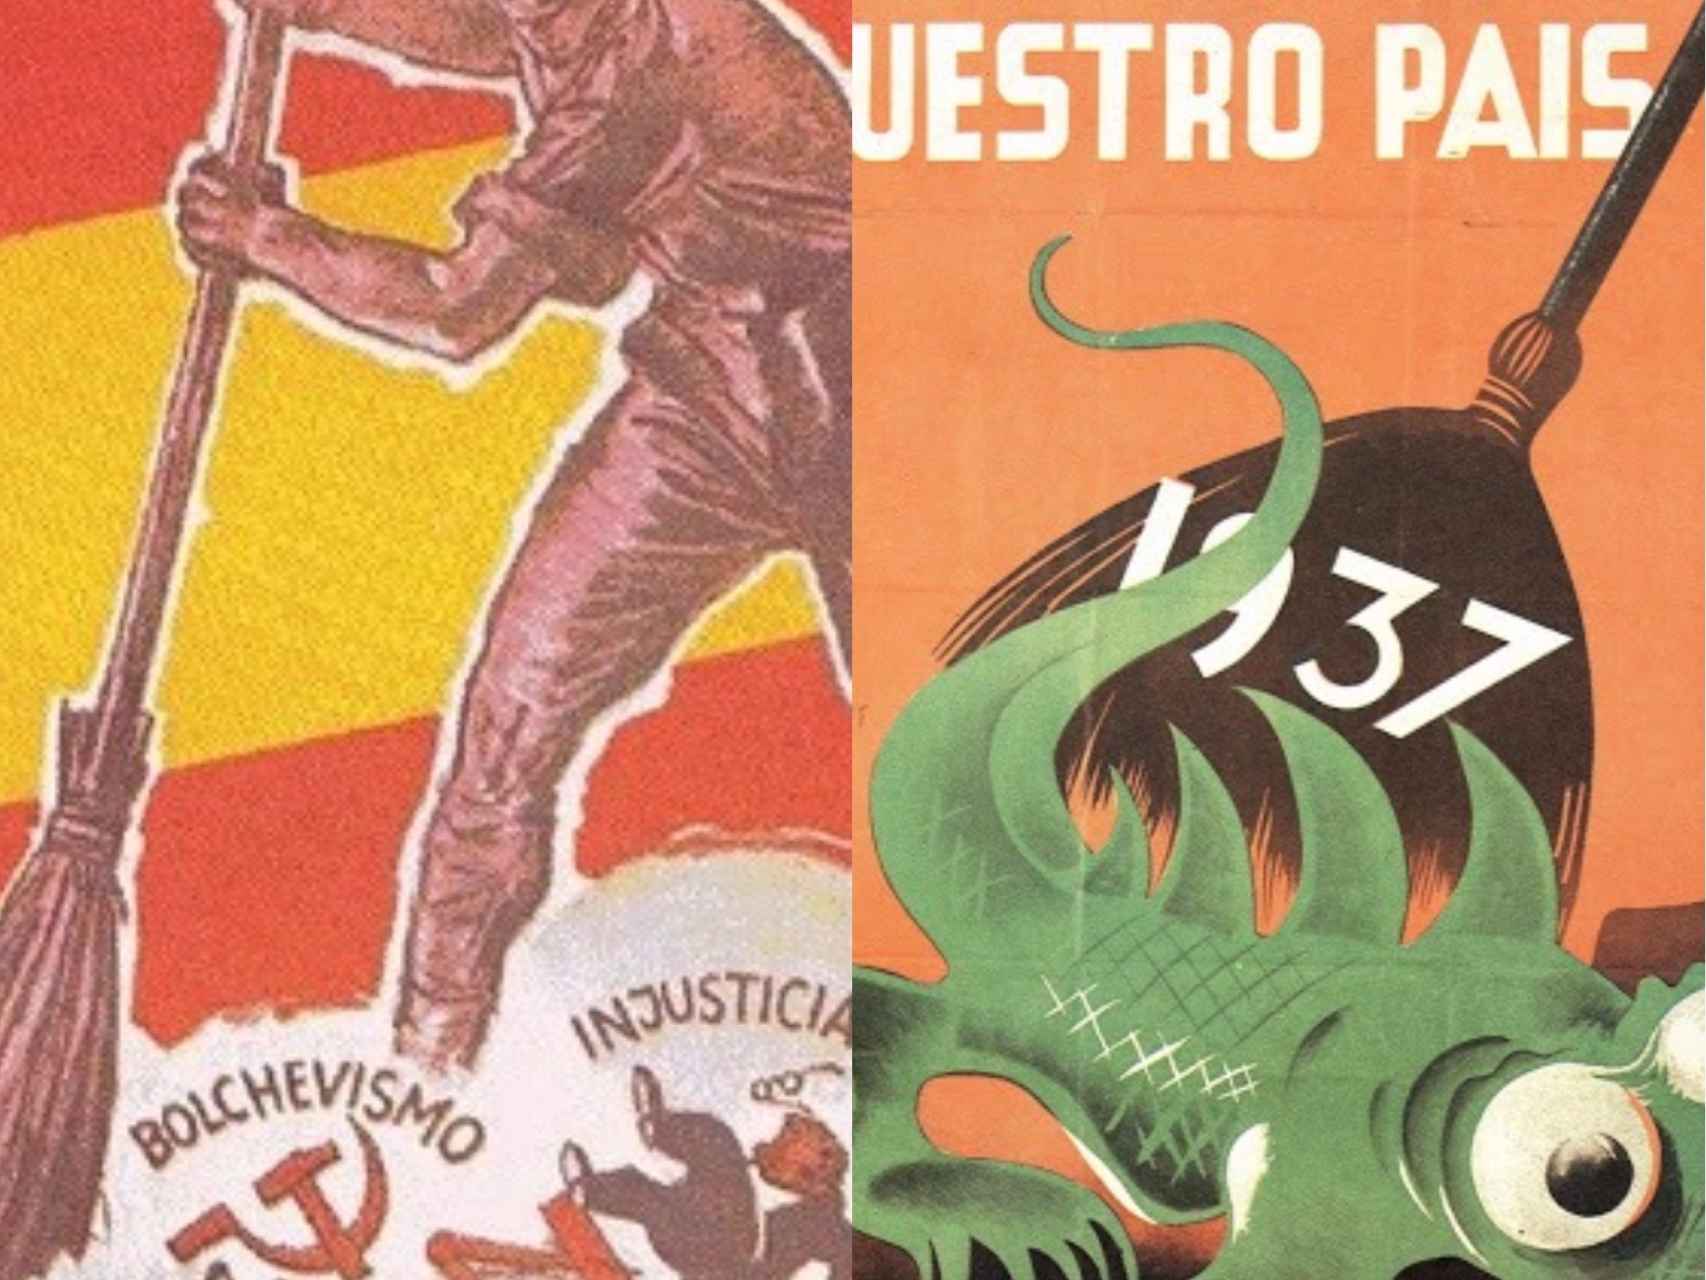 Durante la Guerra CIvil española ambos bandos usaron la misma alegoría.